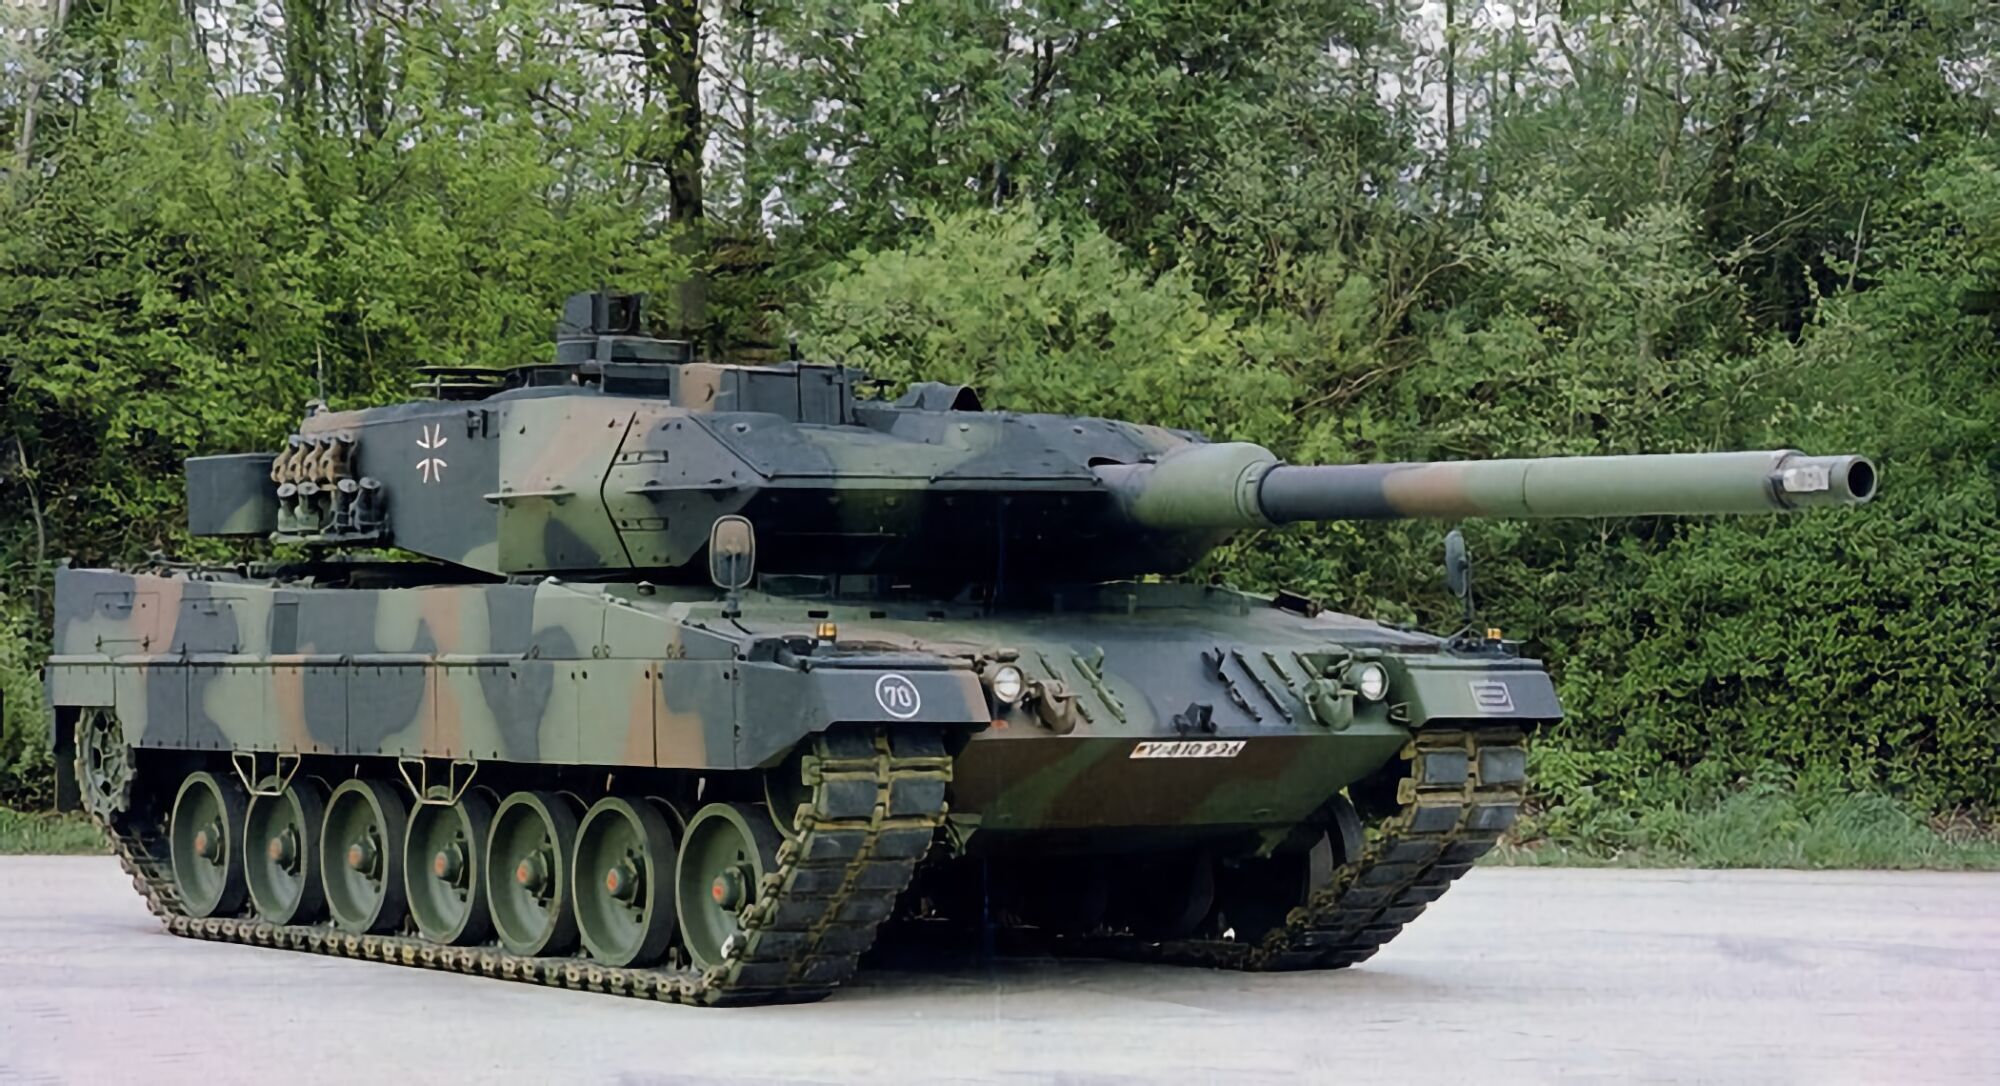 "Ведем тесный диалог": Швеция заявила о готовности предоставить Украине танки Leopard 2